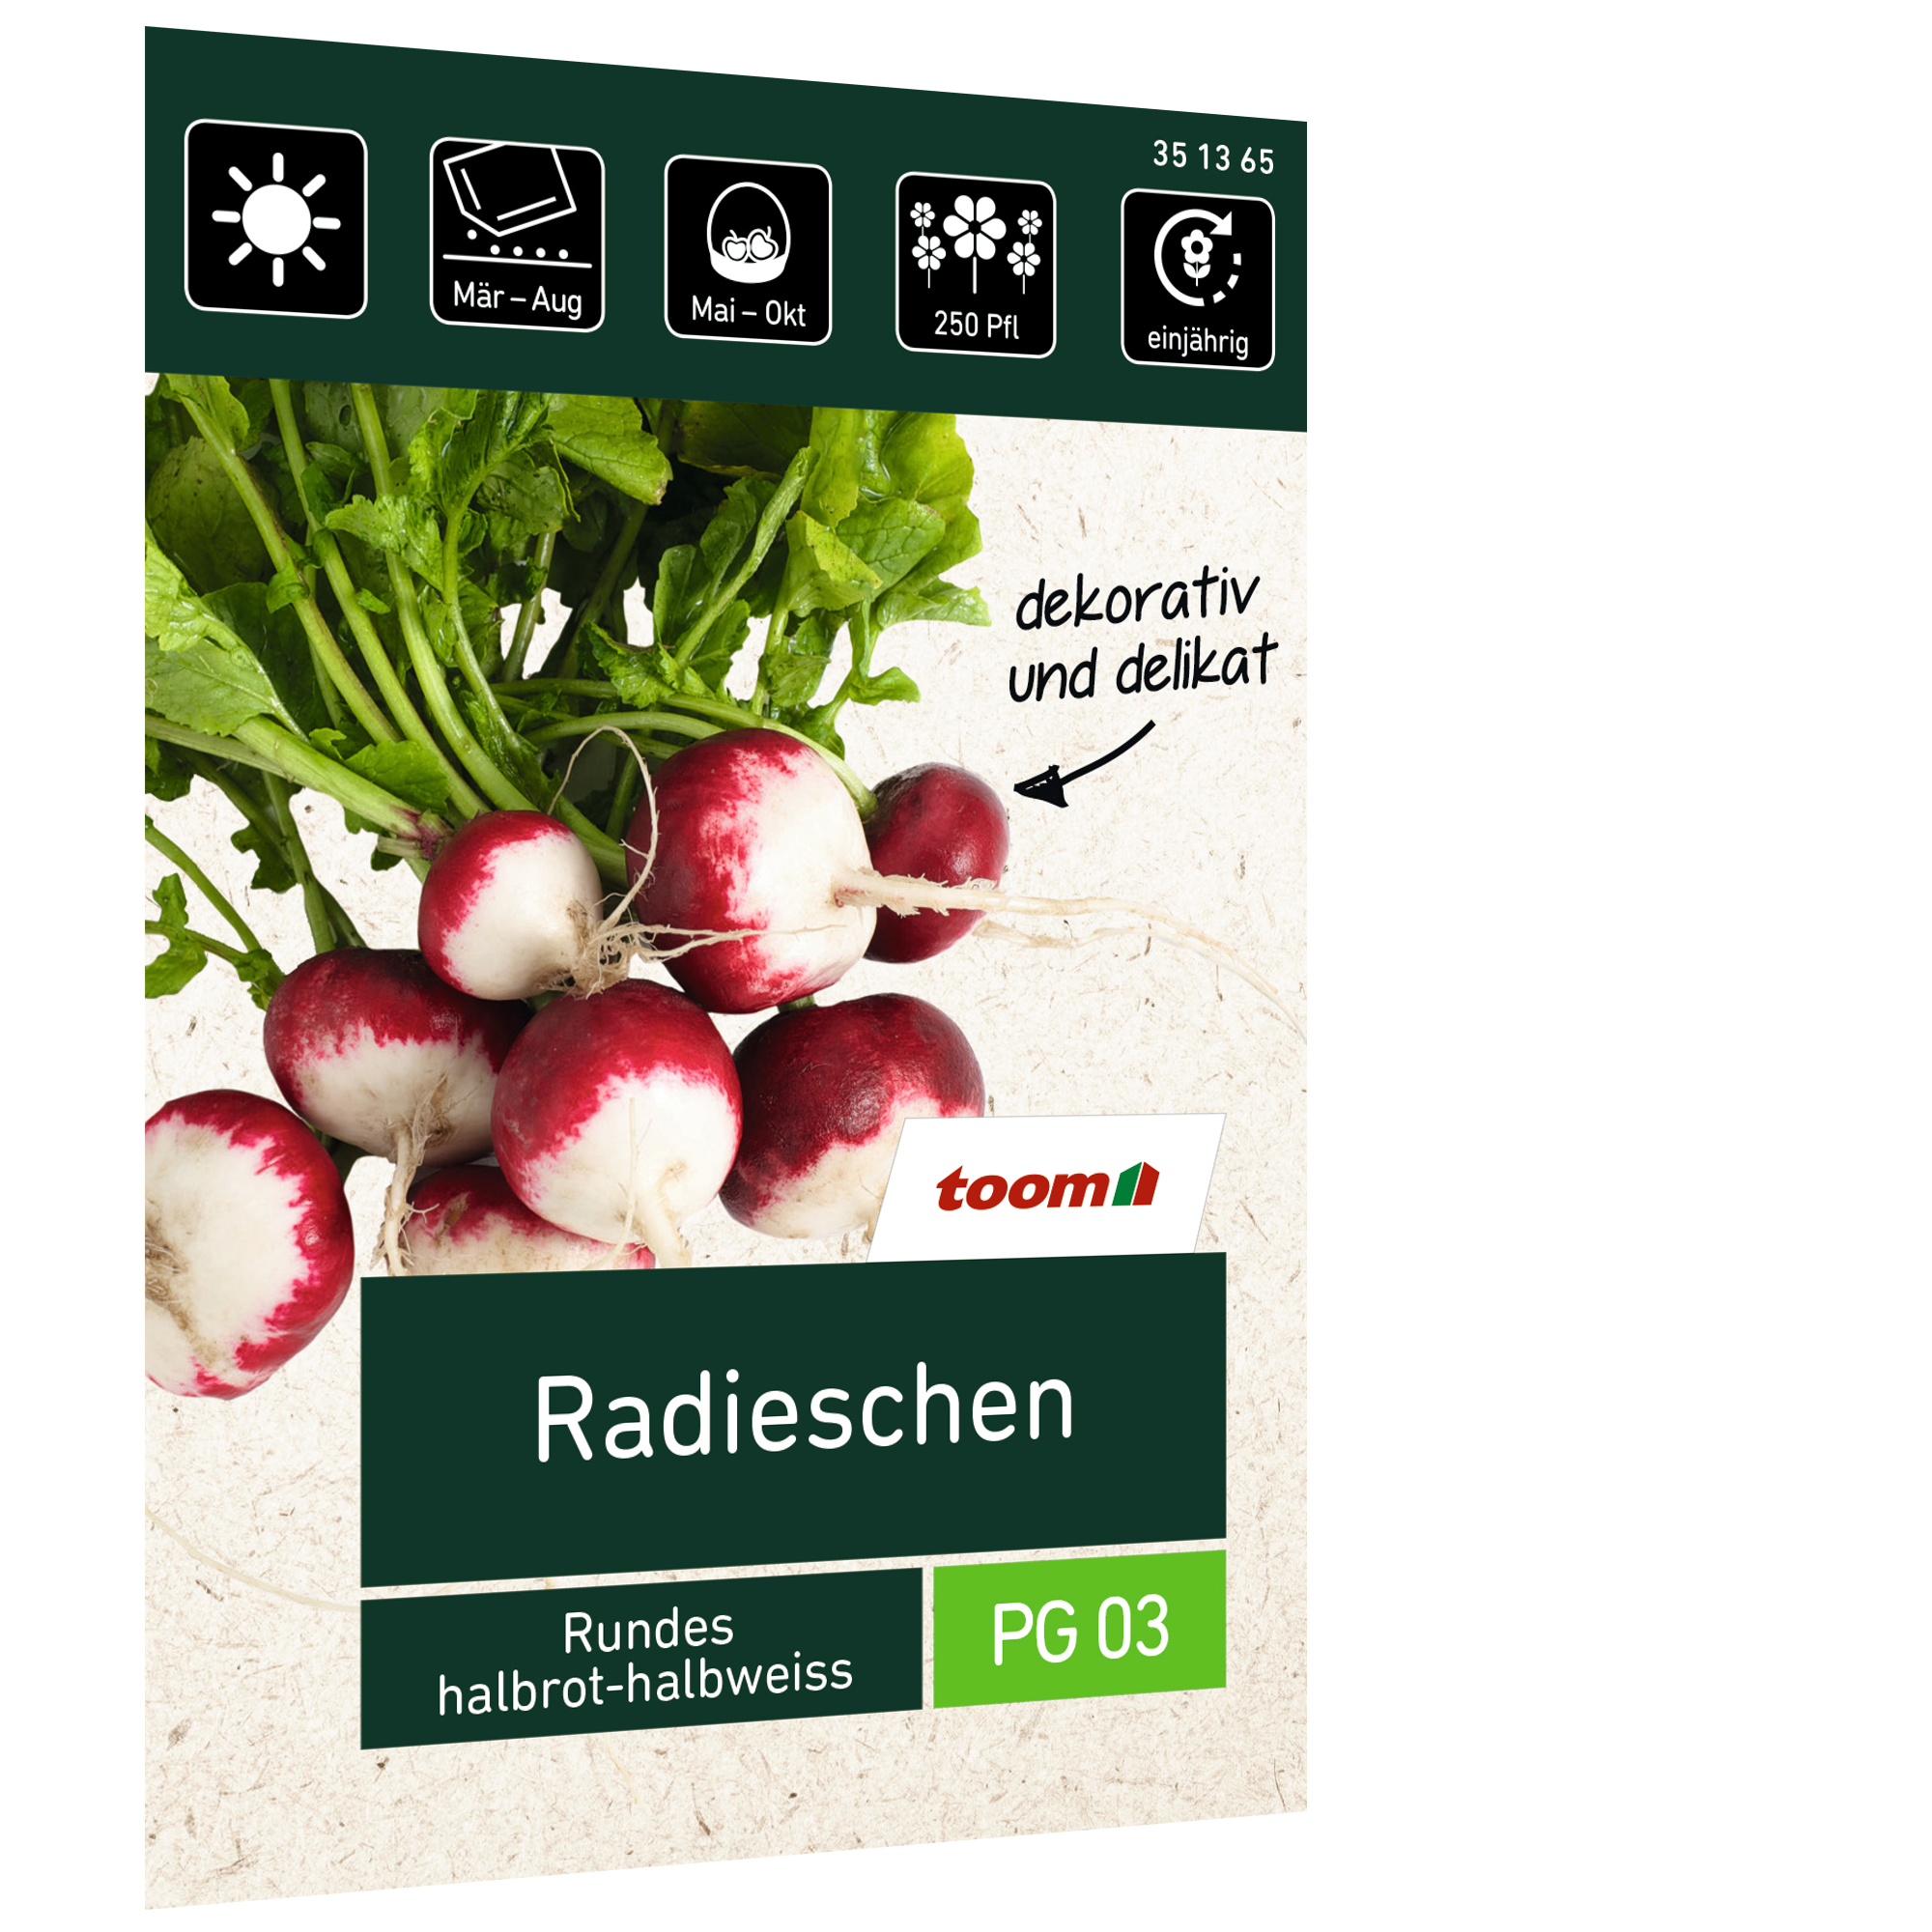 Radieschen Rundes 'halbrot-halbweiß' + product picture